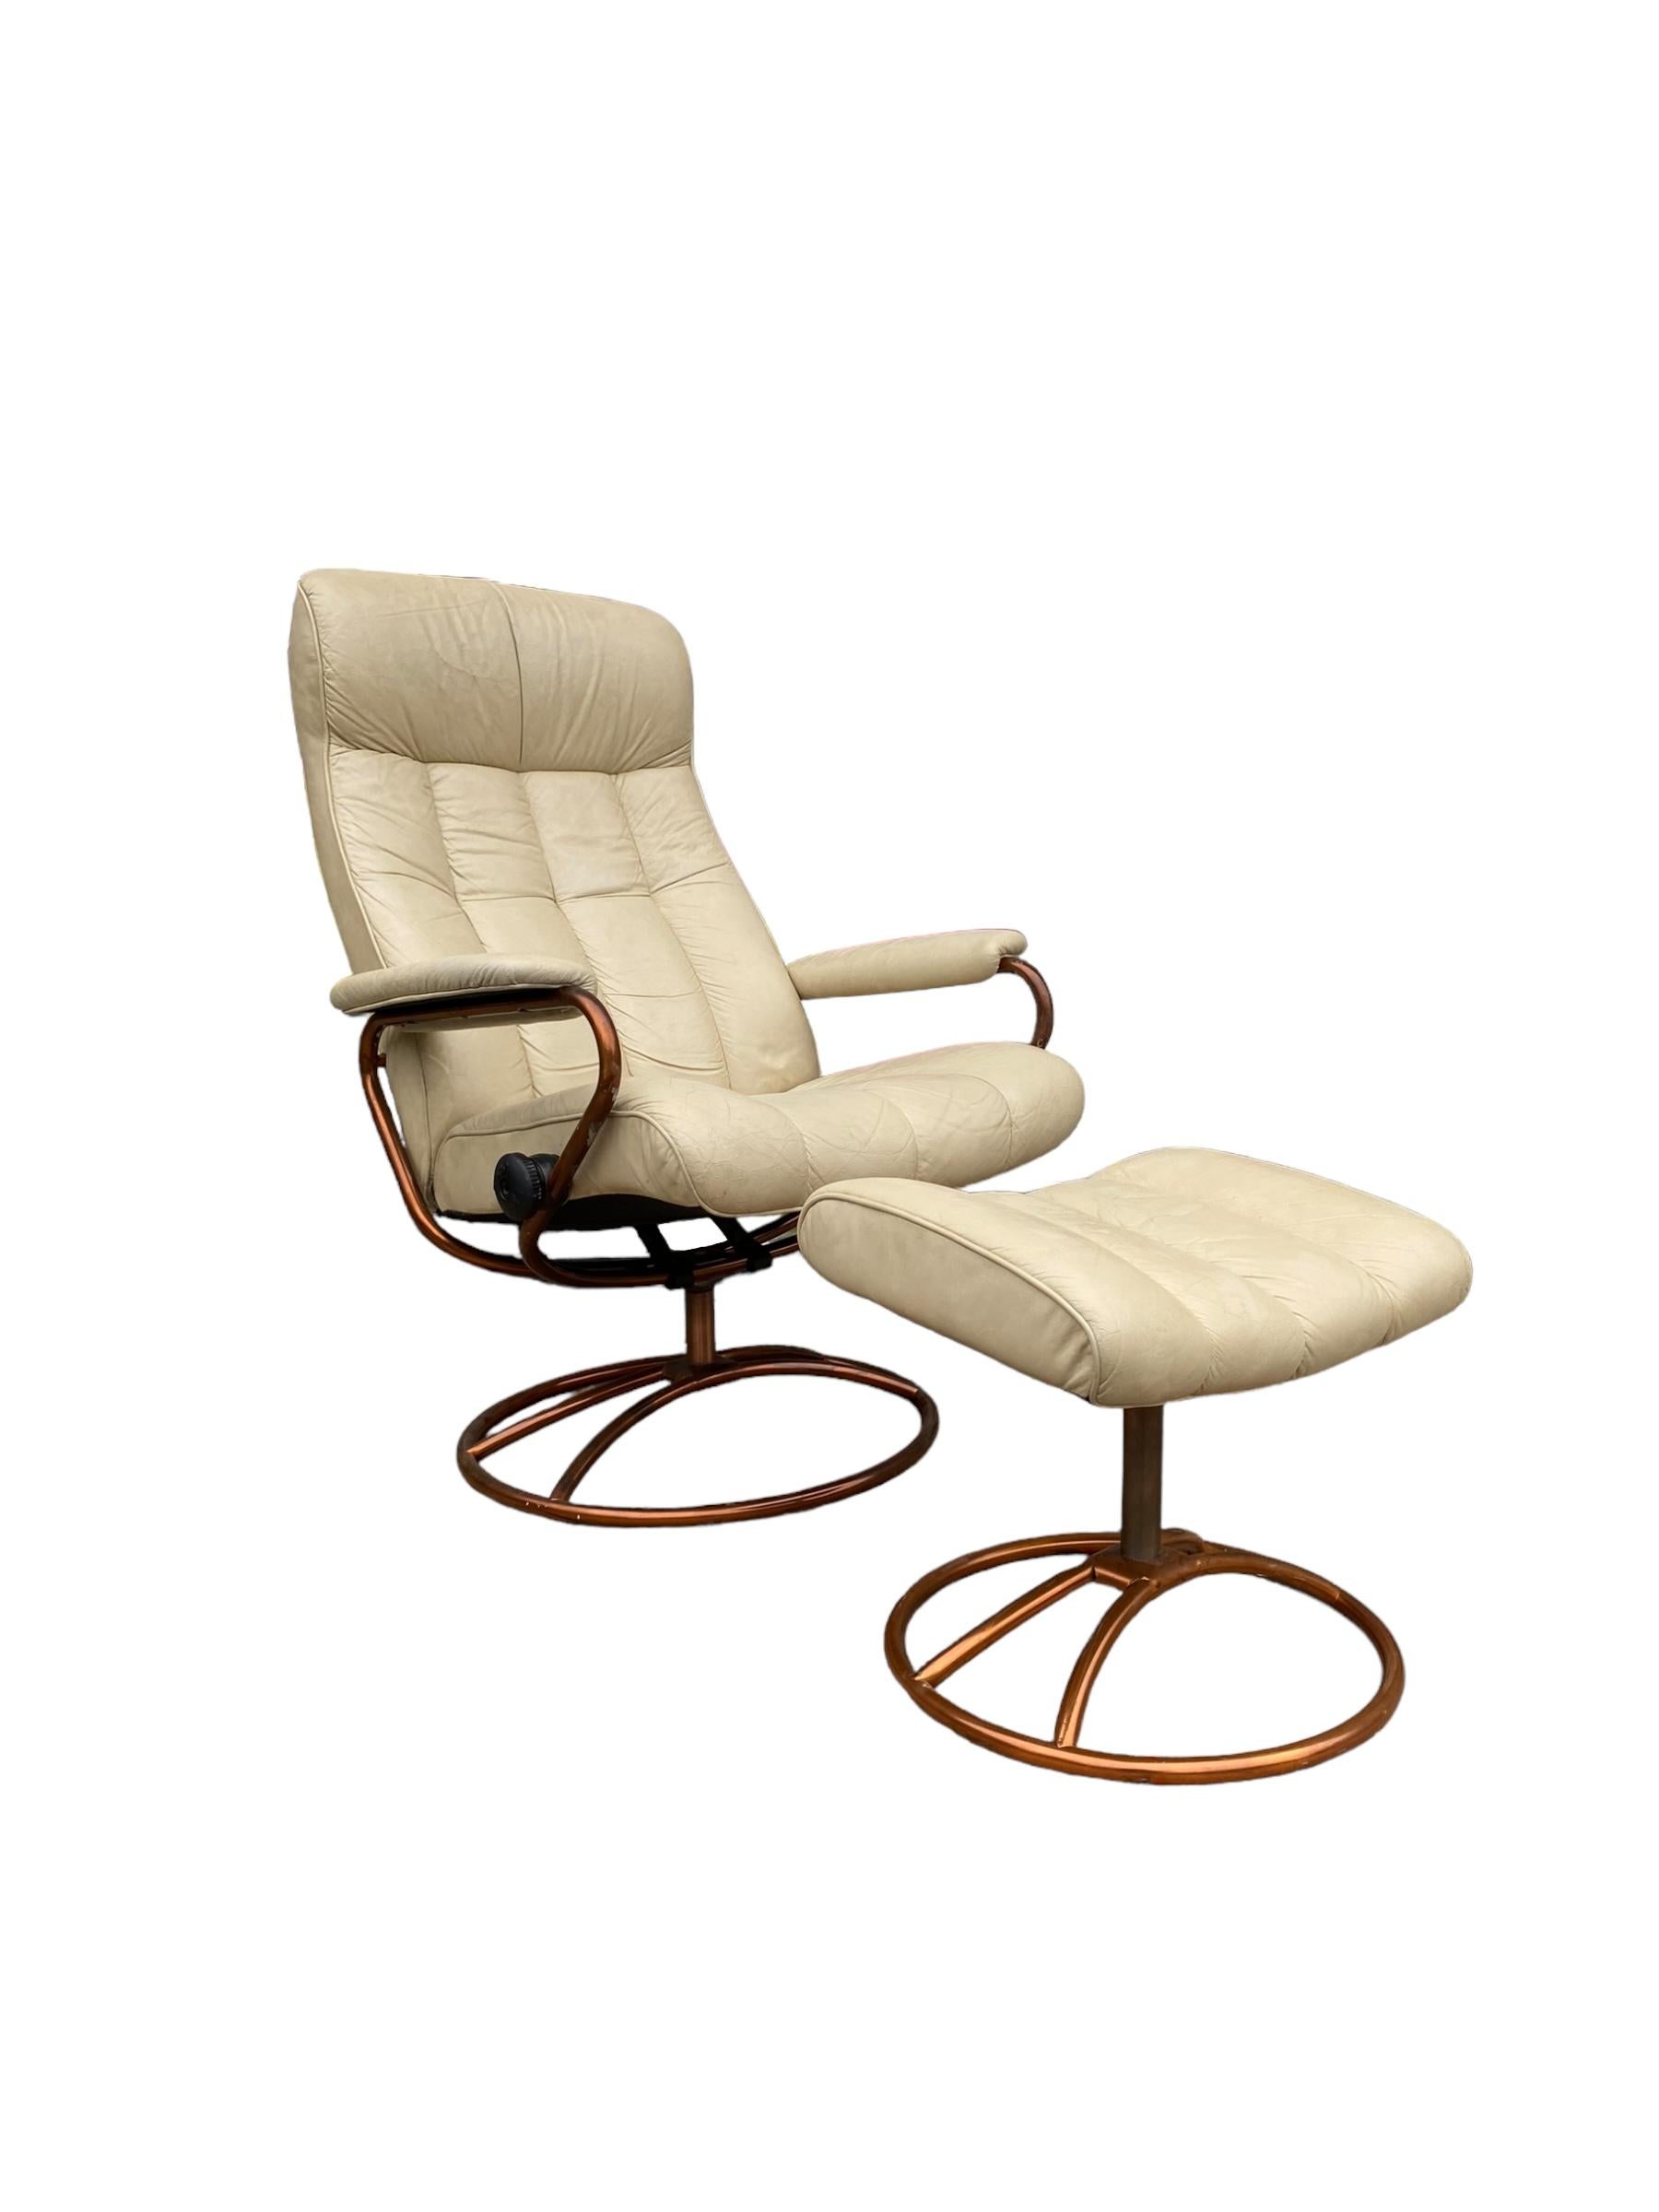 Vintage Post Modern Ekornes Stressless Lounge Chair und Ottoman in cremefarbenem Leder und einem kupferfarbenen Stahlrahmen. Der Stuhl kann schwenken und sich vollständig zurücklehnen, um ein Gefühl der Schwerelosigkeit zu vermitteln. Elegantes,